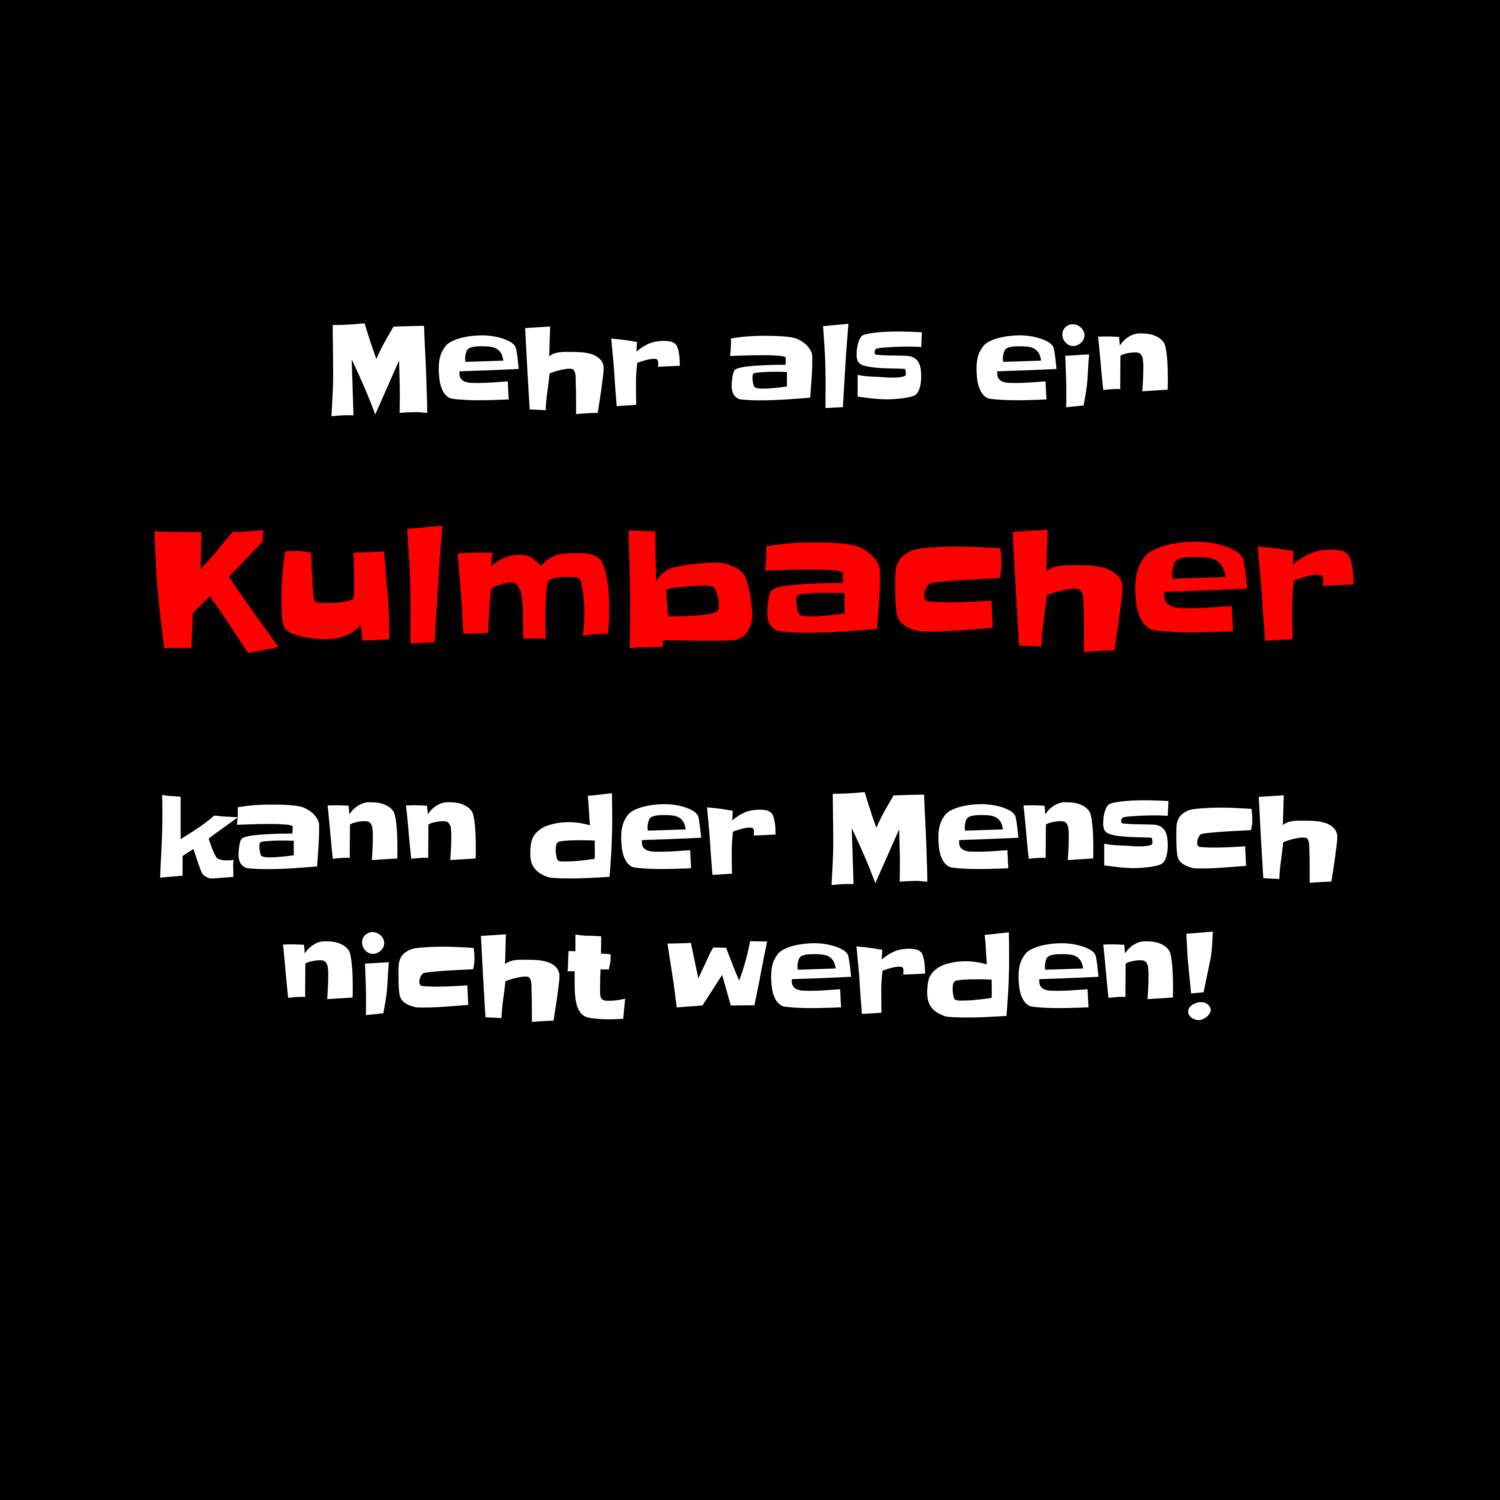 Kulmbach T-Shirt »Mehr als ein«